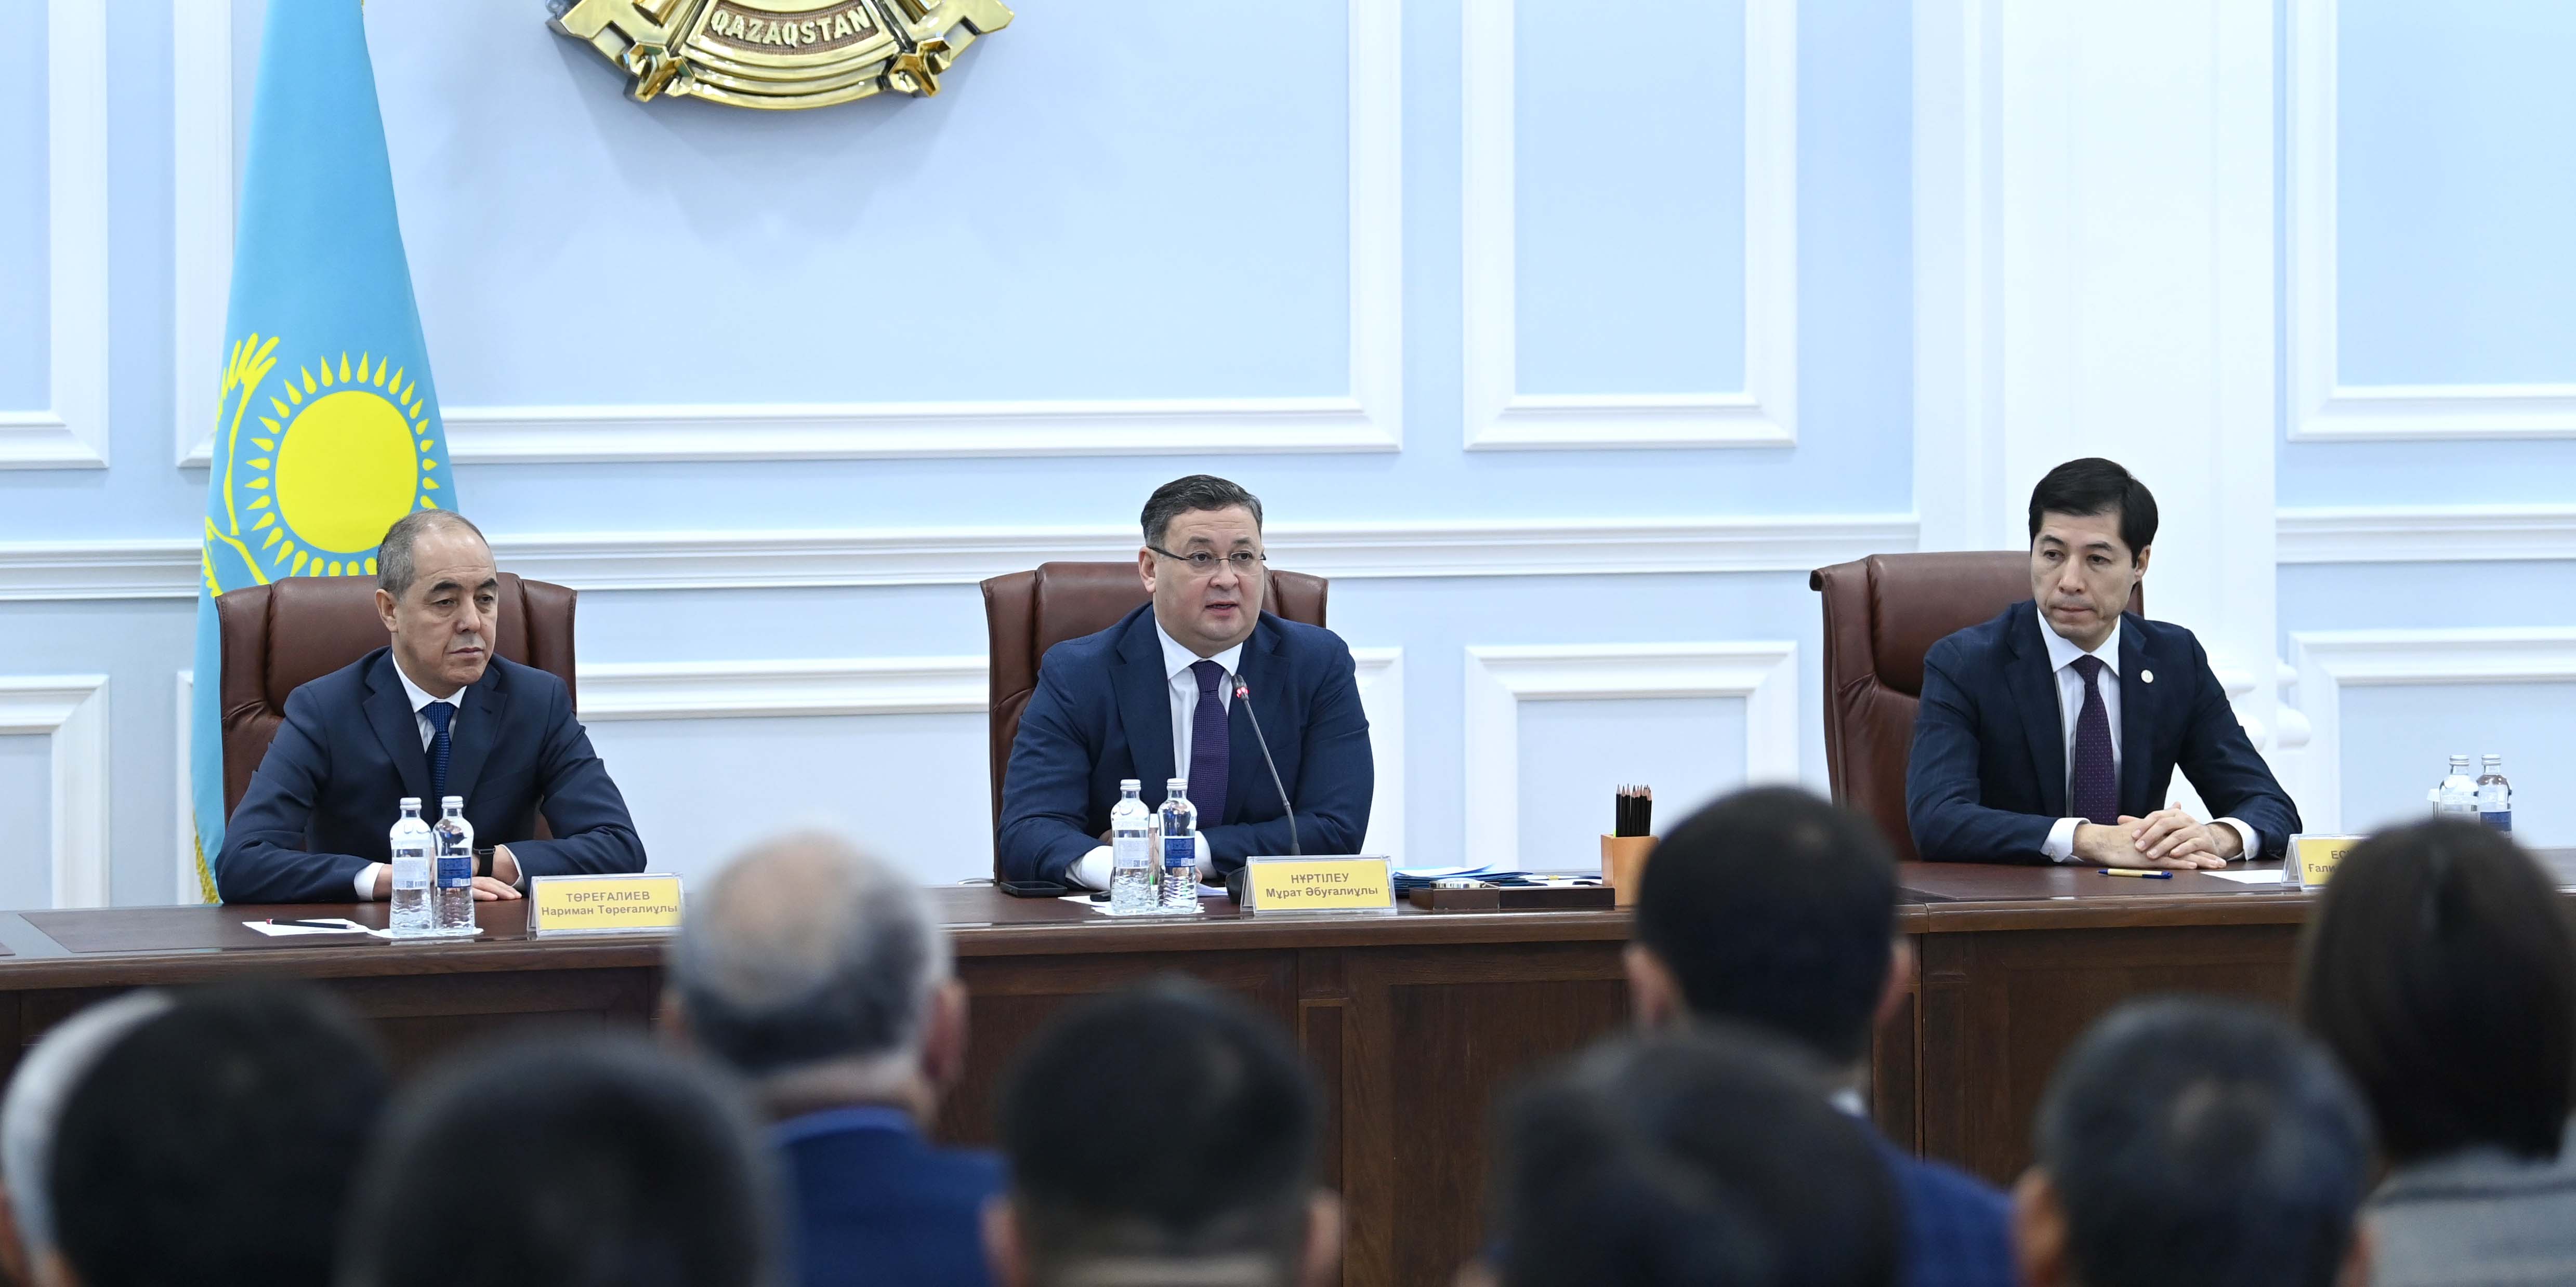 Руководитель Администрации Президента представил нового акима Западно-Казахстанской области